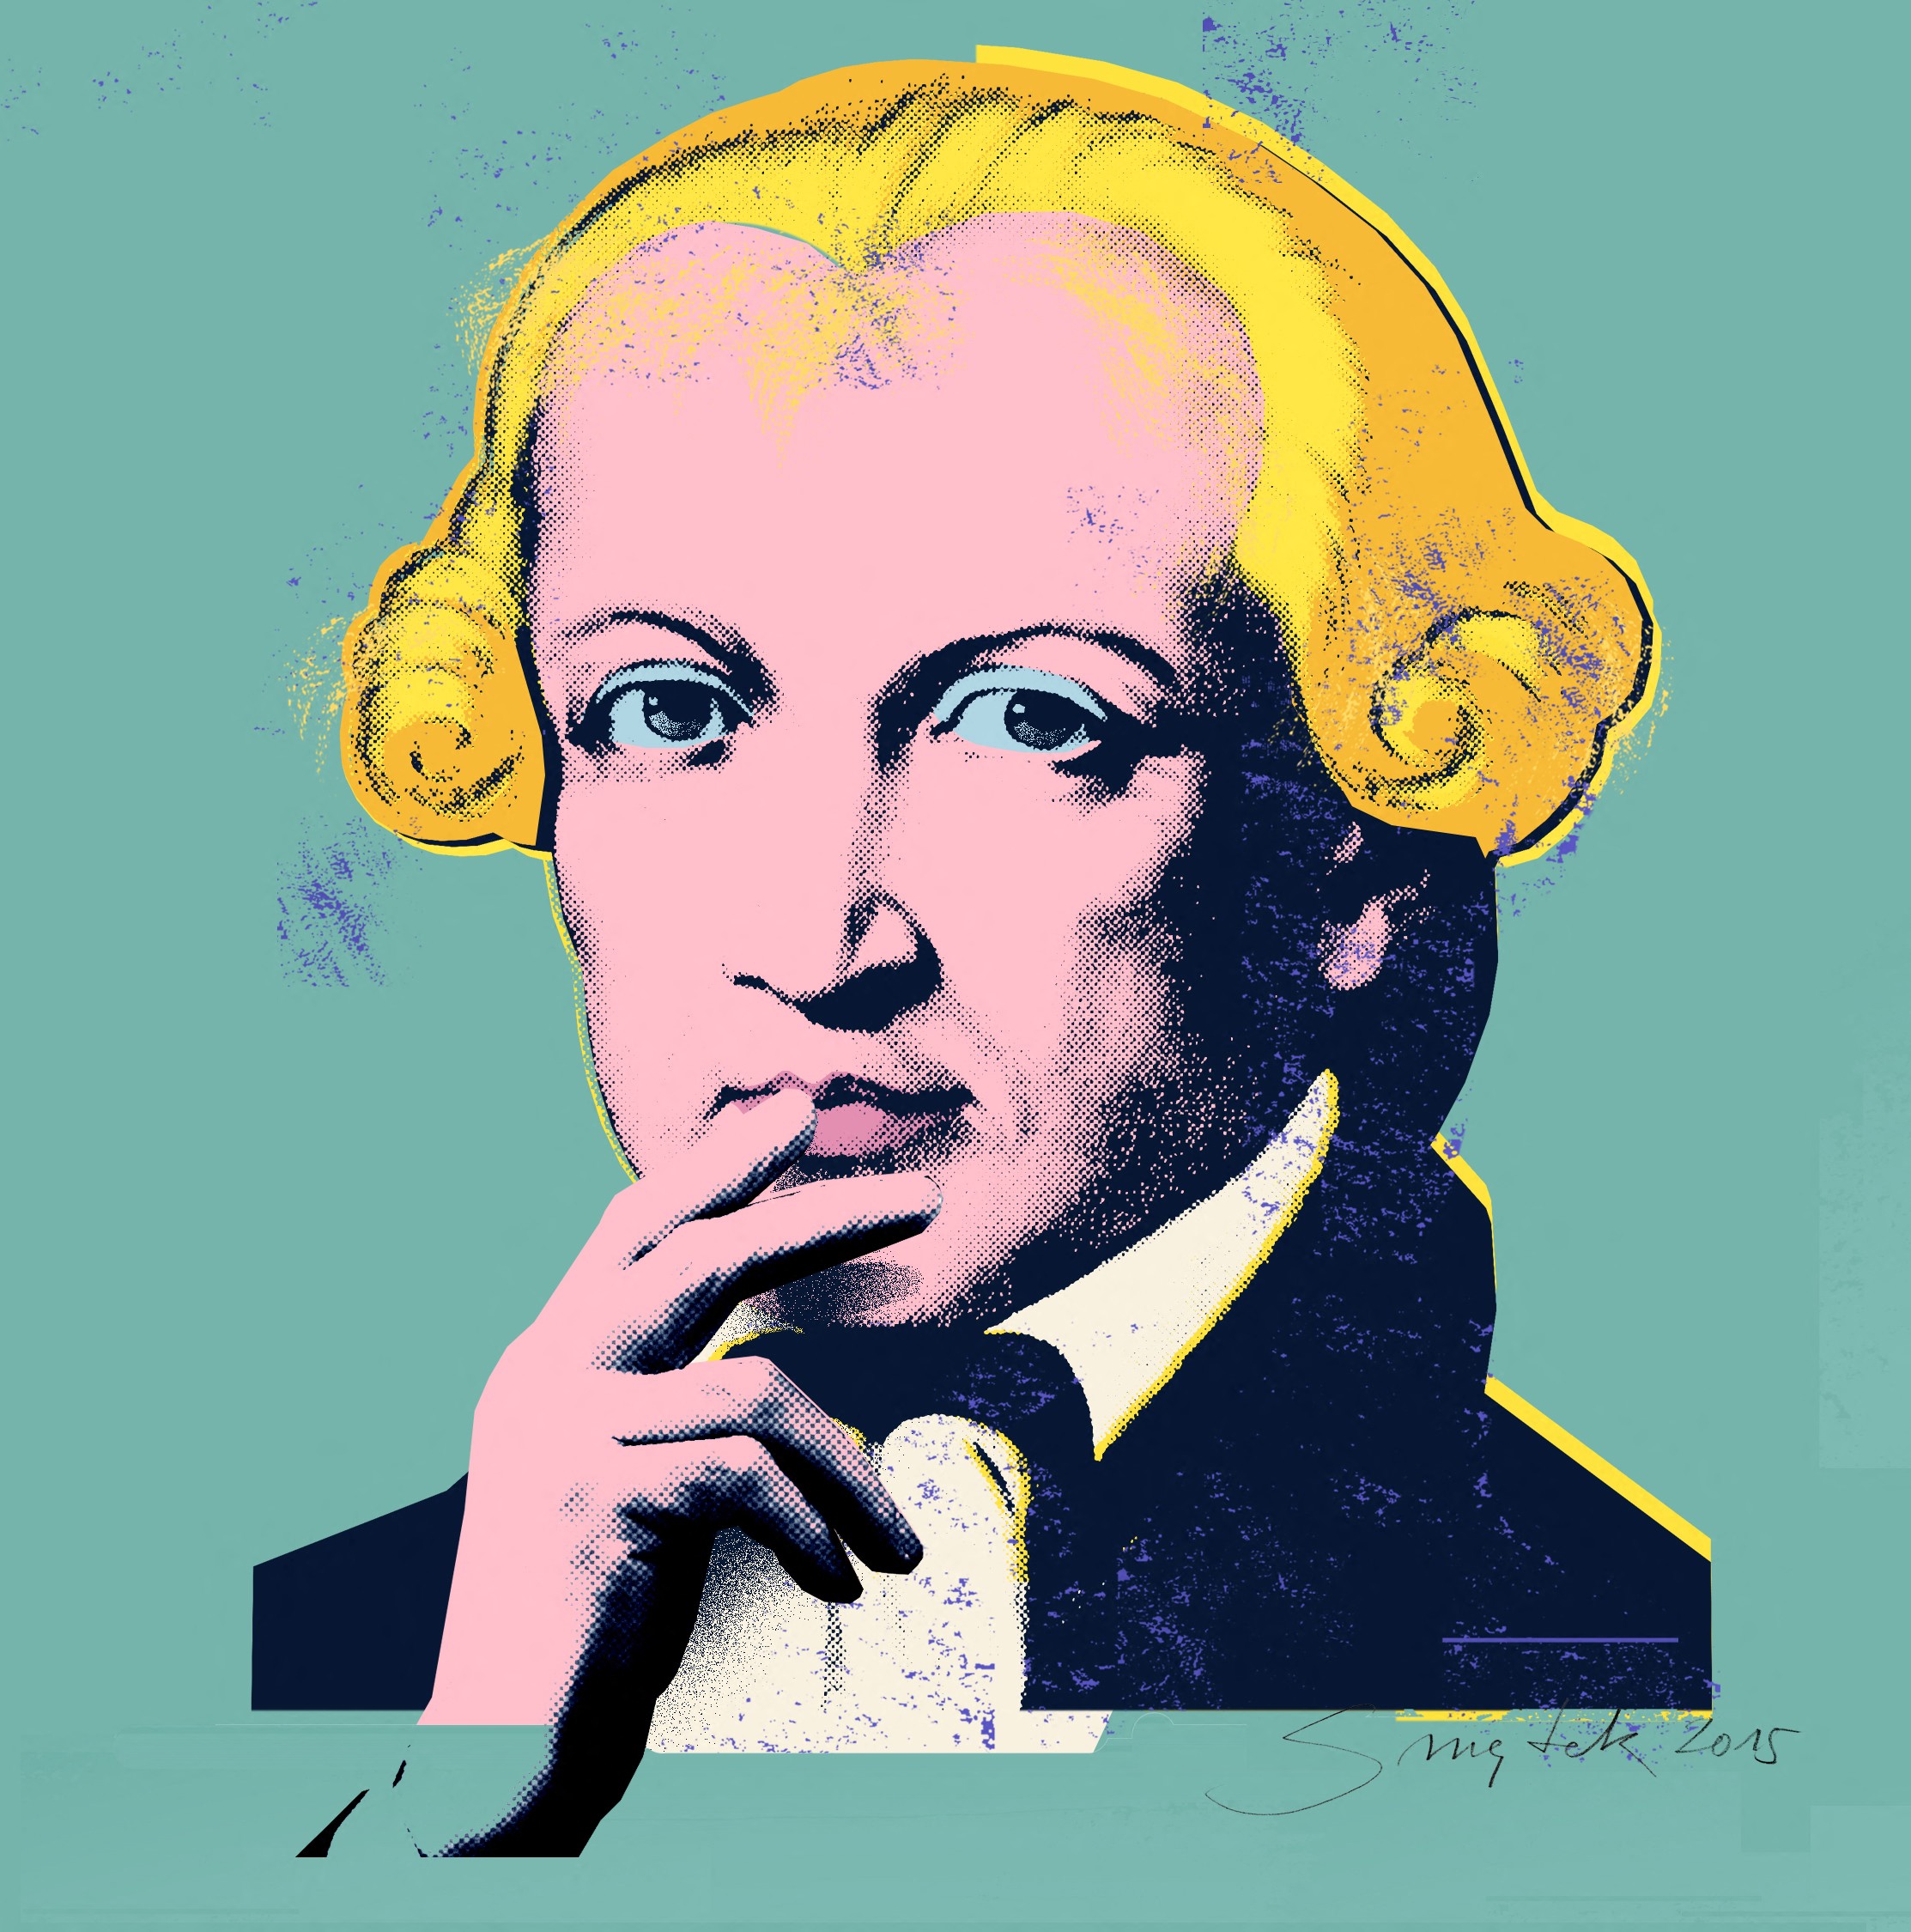 Mesterséges intelligencia prédikált vasárnap a dömösi templomban. De mit mondana erre Immanuel Kant?